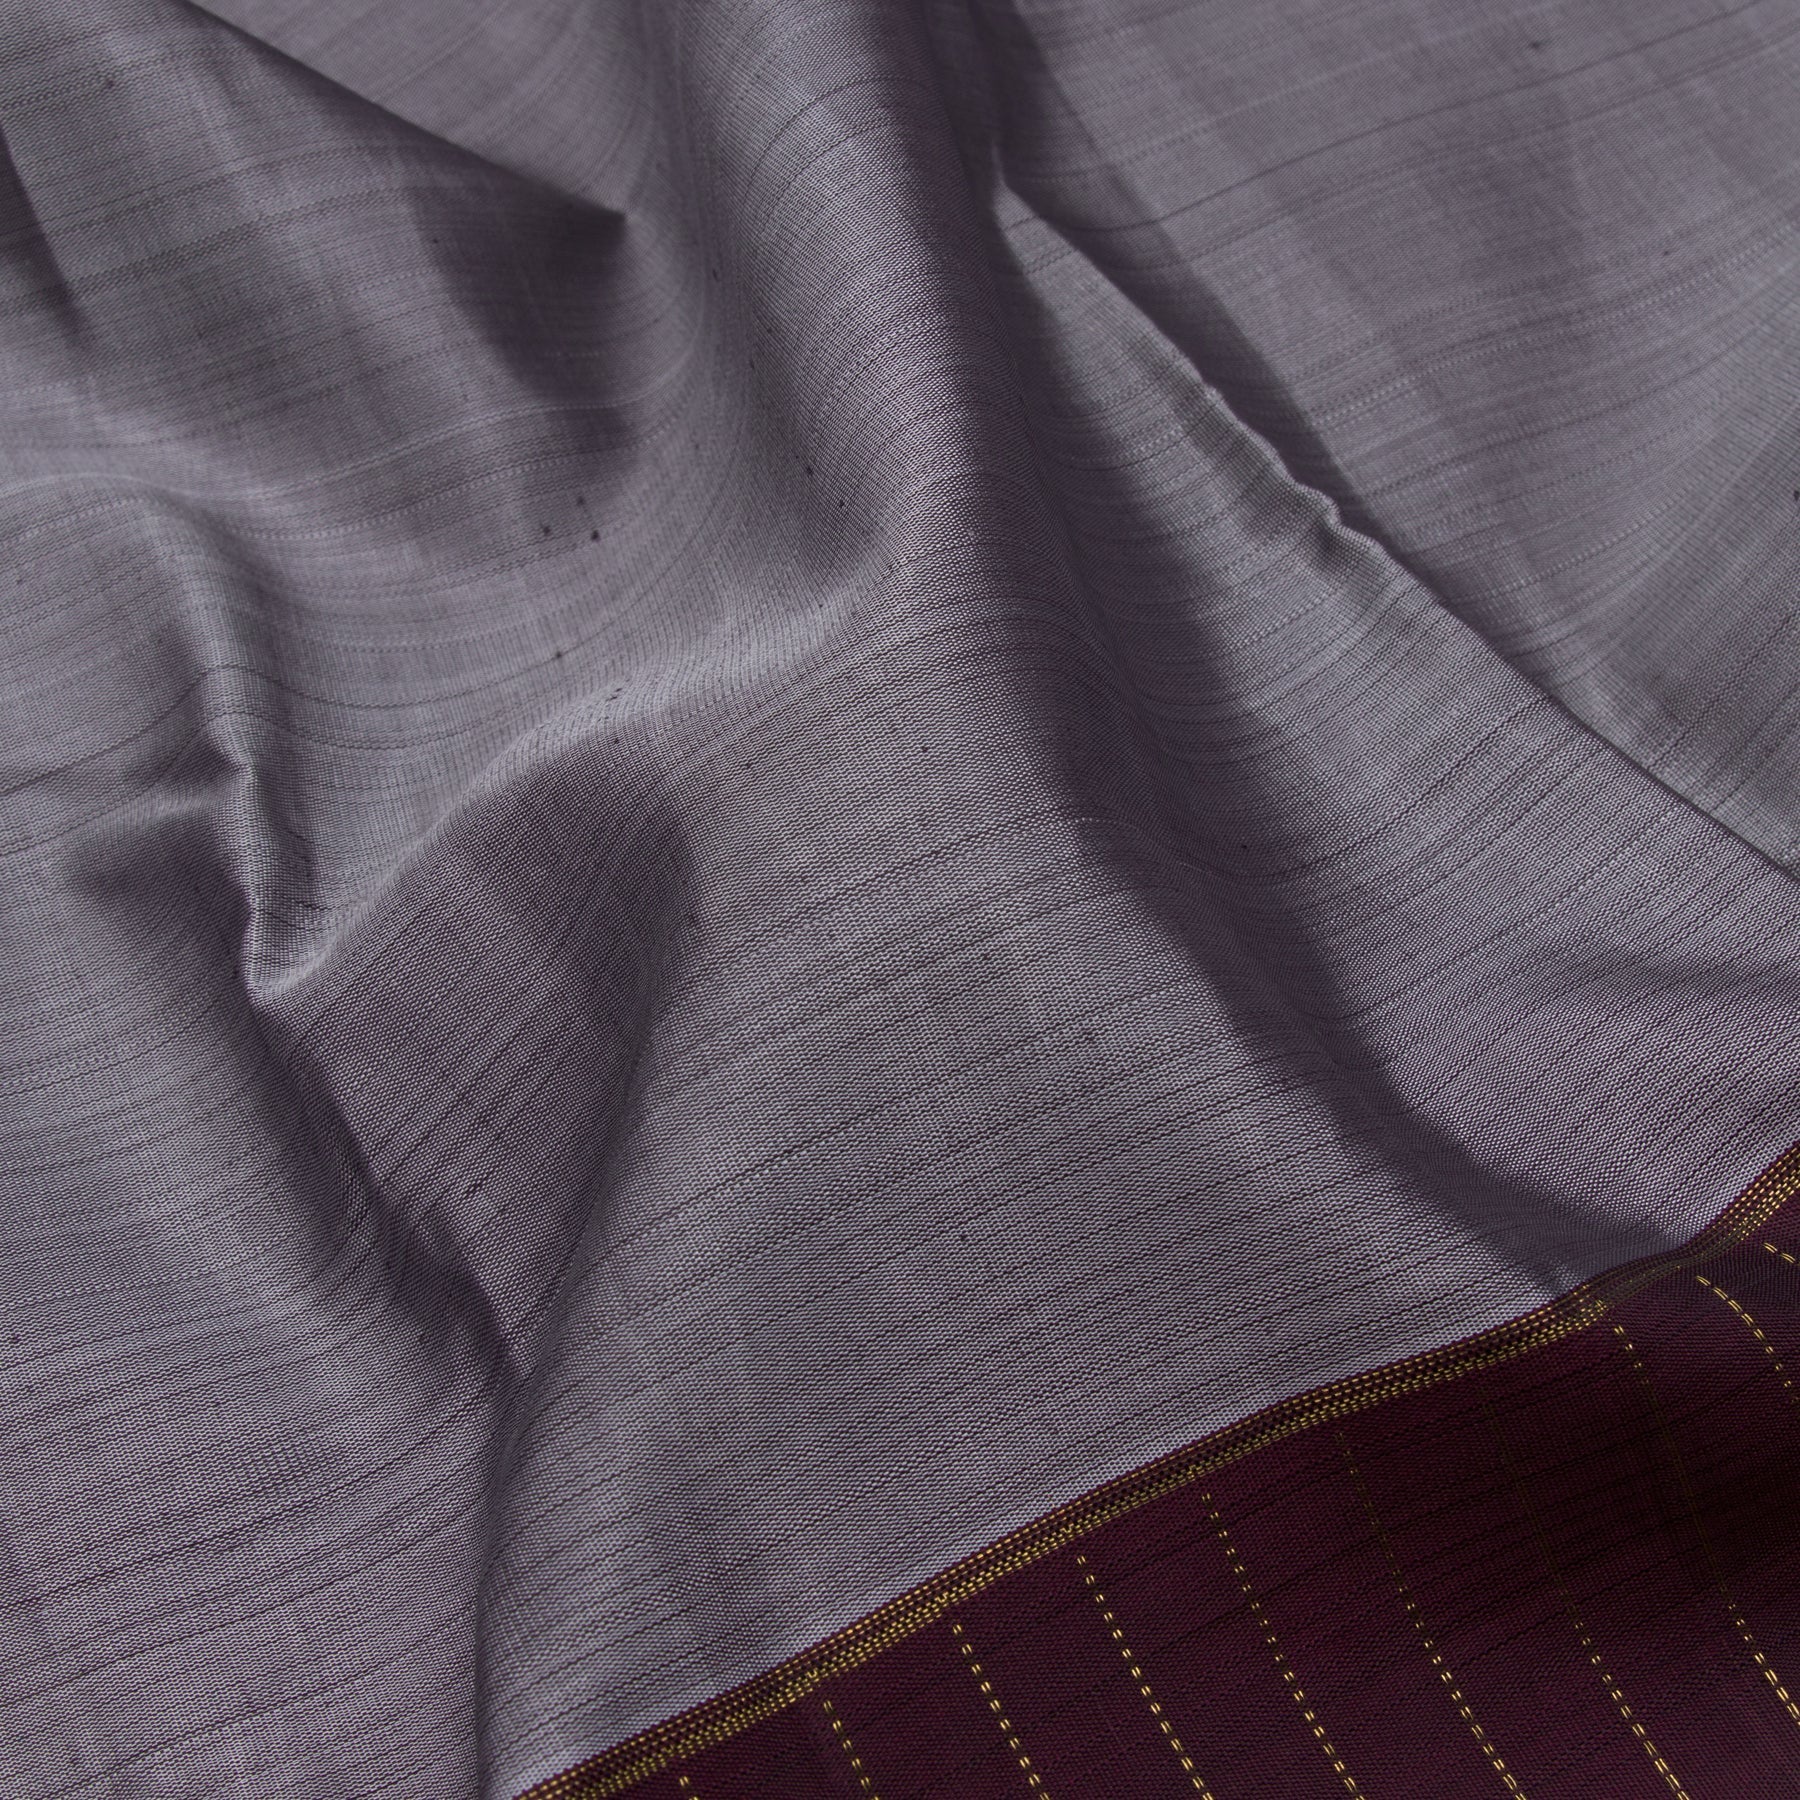 Kanakavalli Kanjivaram Silk Sari 23-599-HS001-01946 - Fabric View